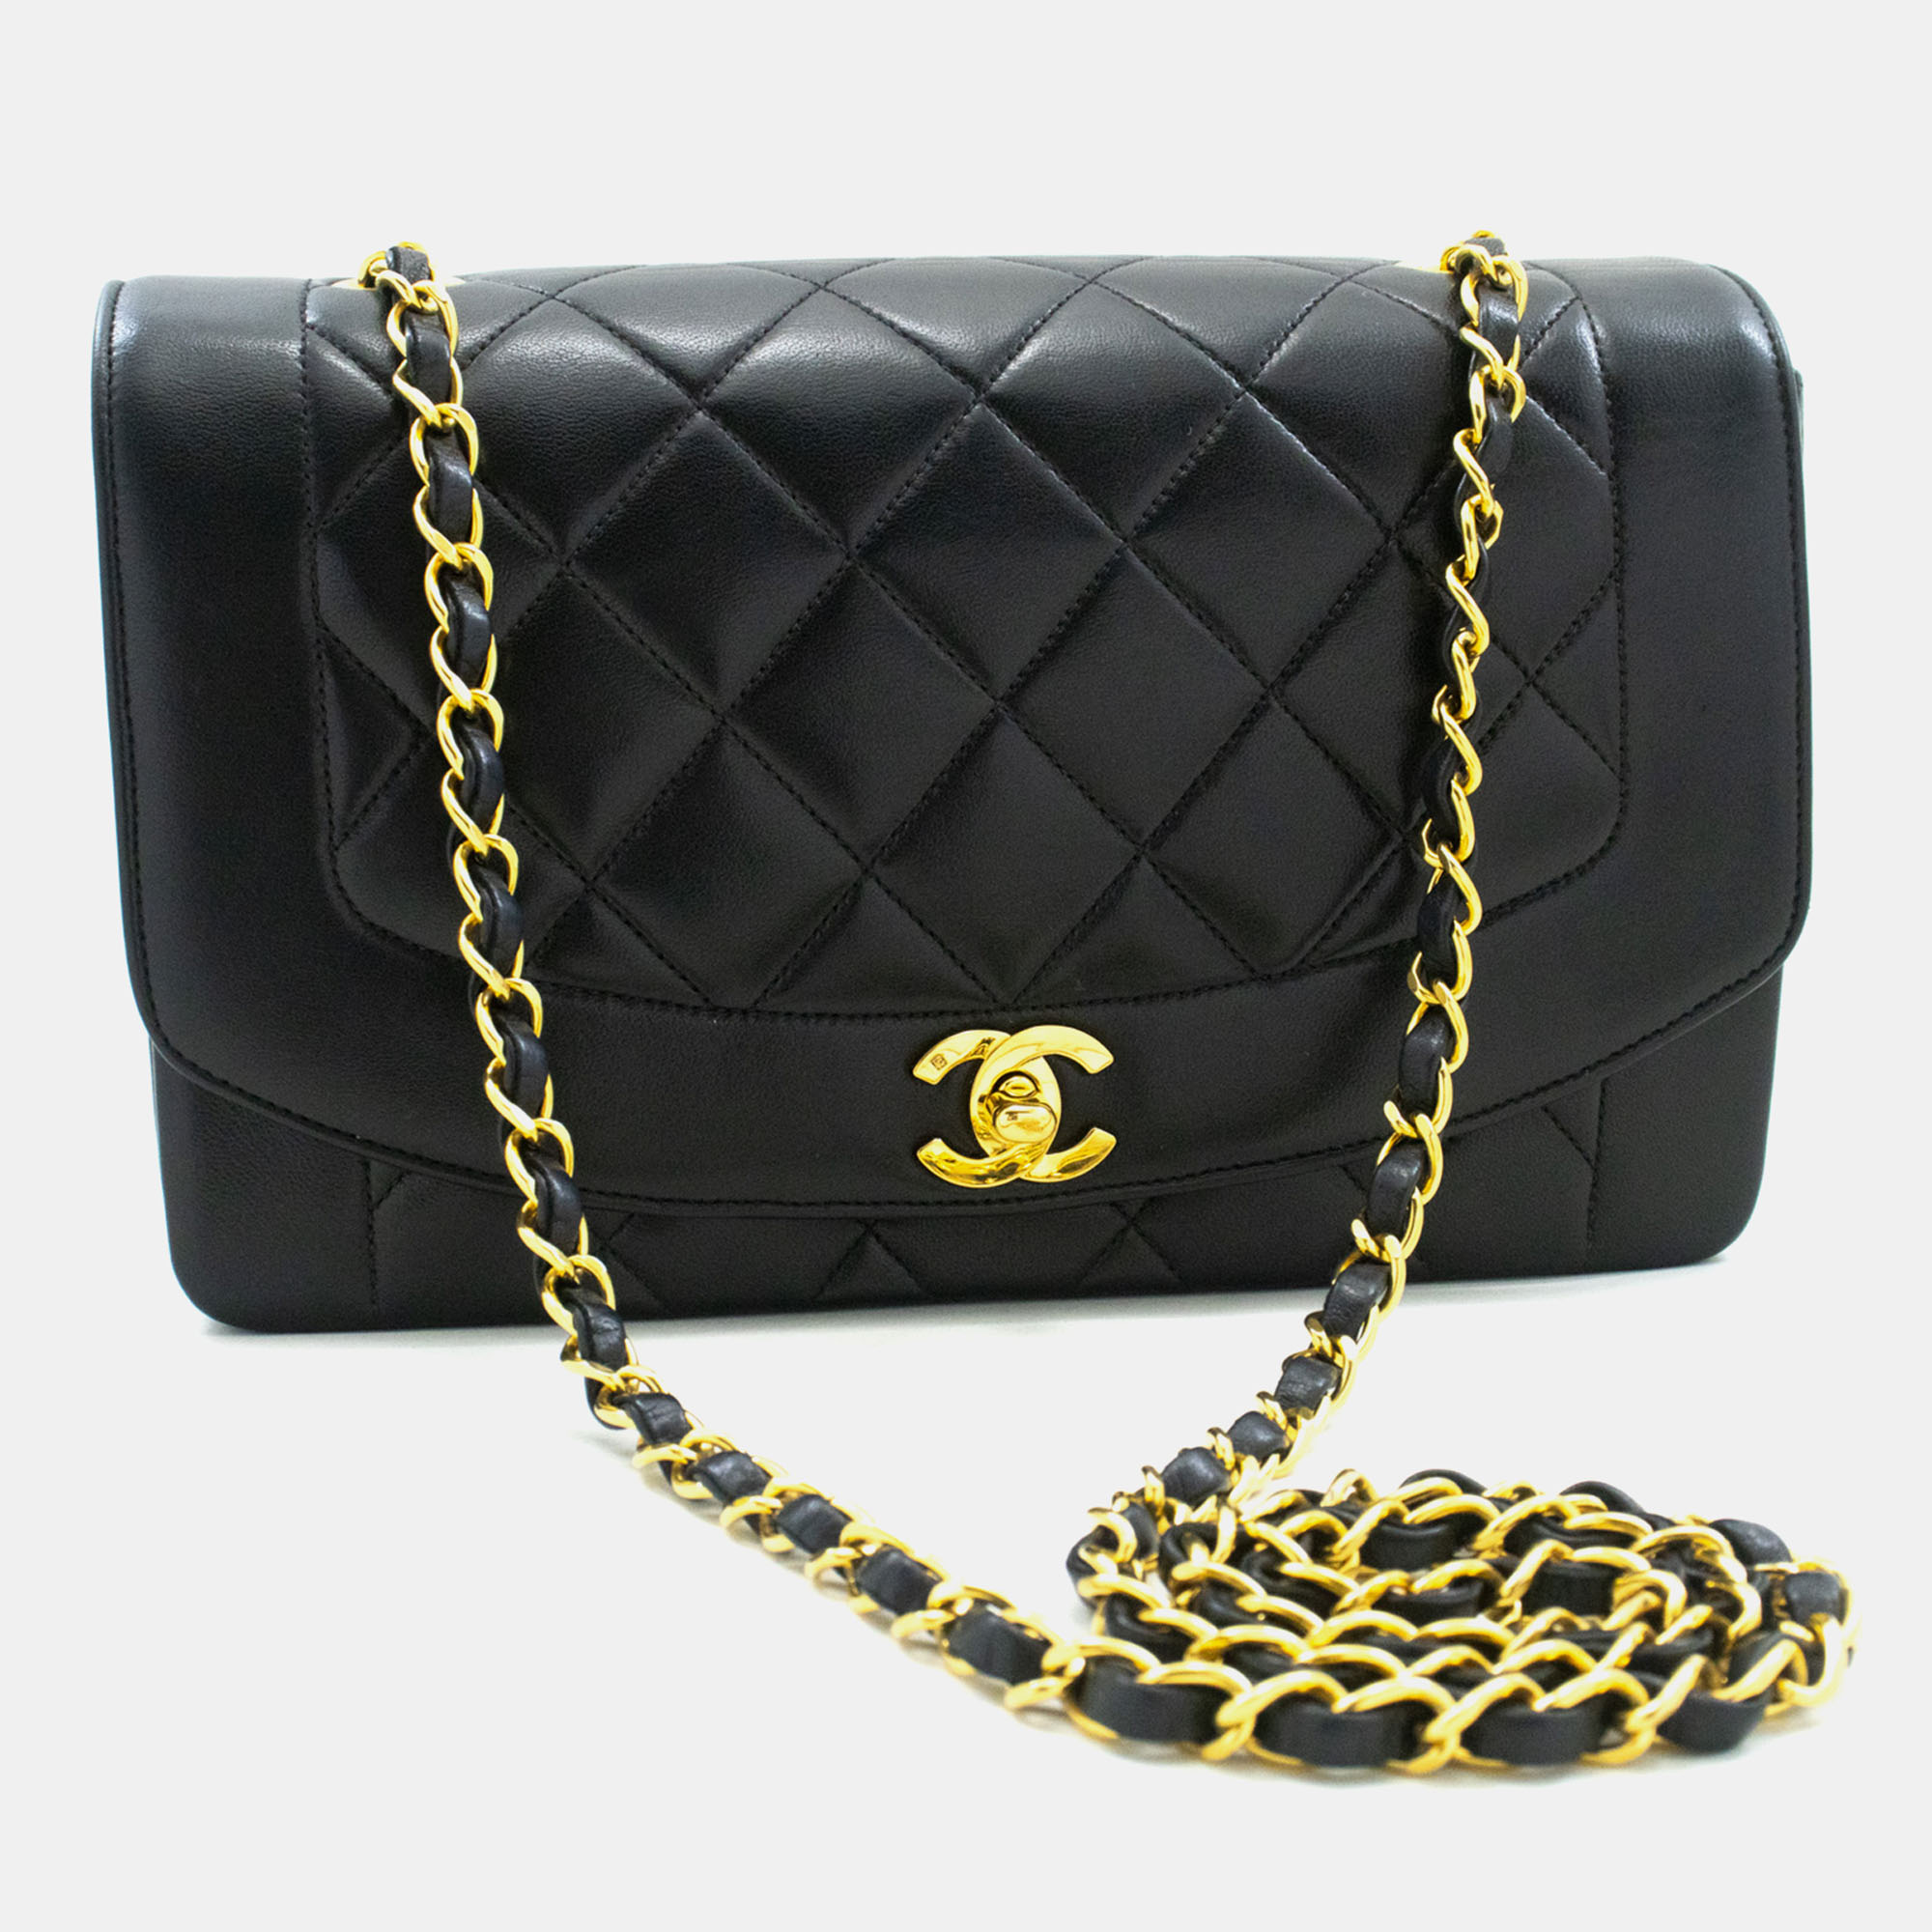 

Chanel Black Leather Diana Medium Shoulder Bag